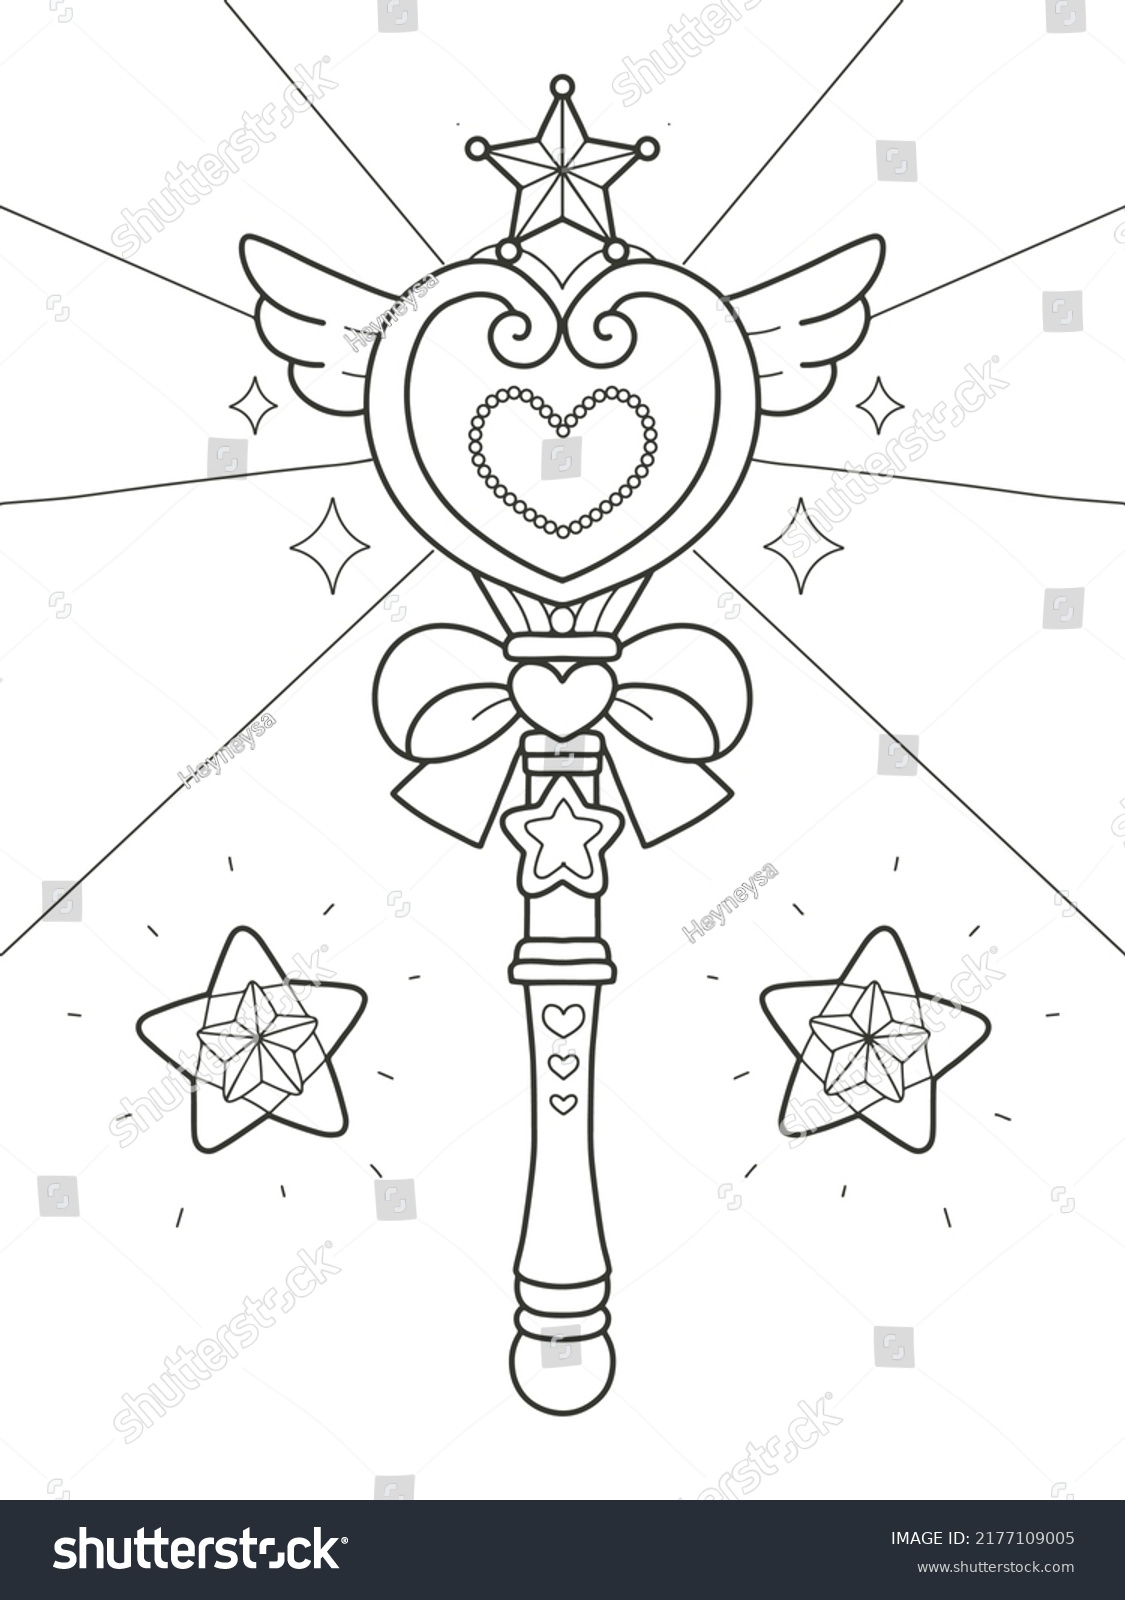 Printable princess magic wand coloring pages stock vector royalty free